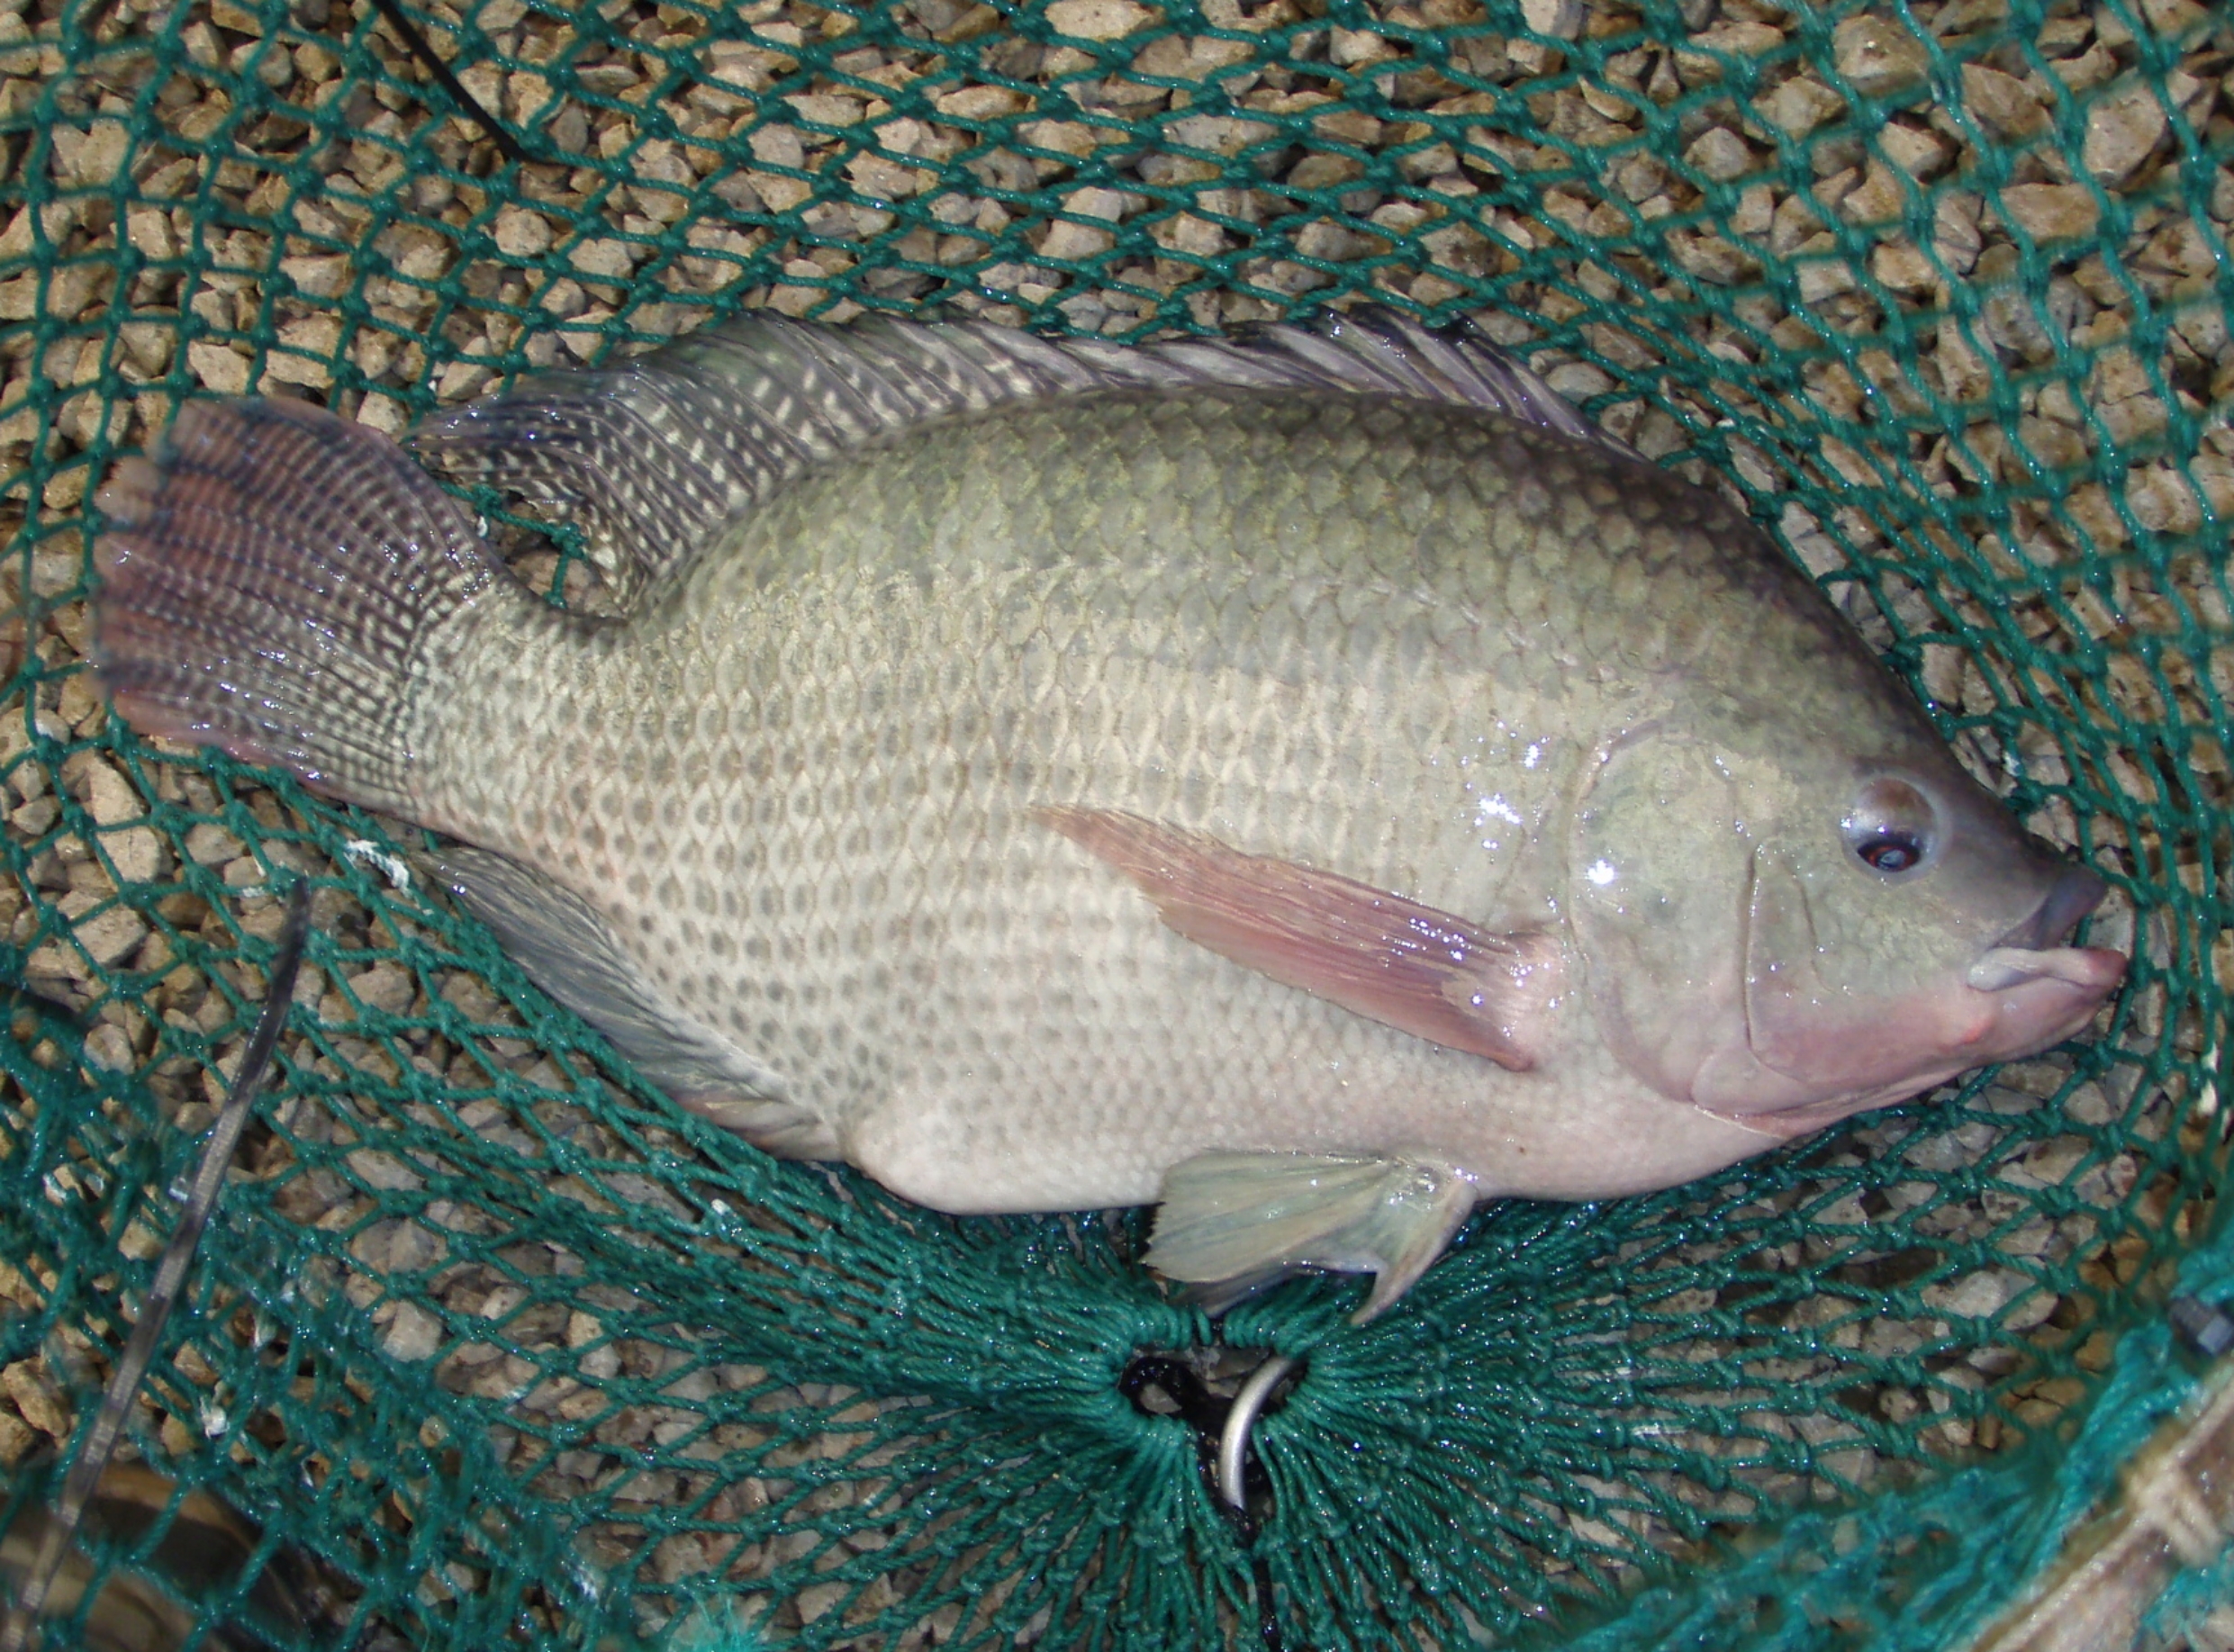 NATI Fish in Net